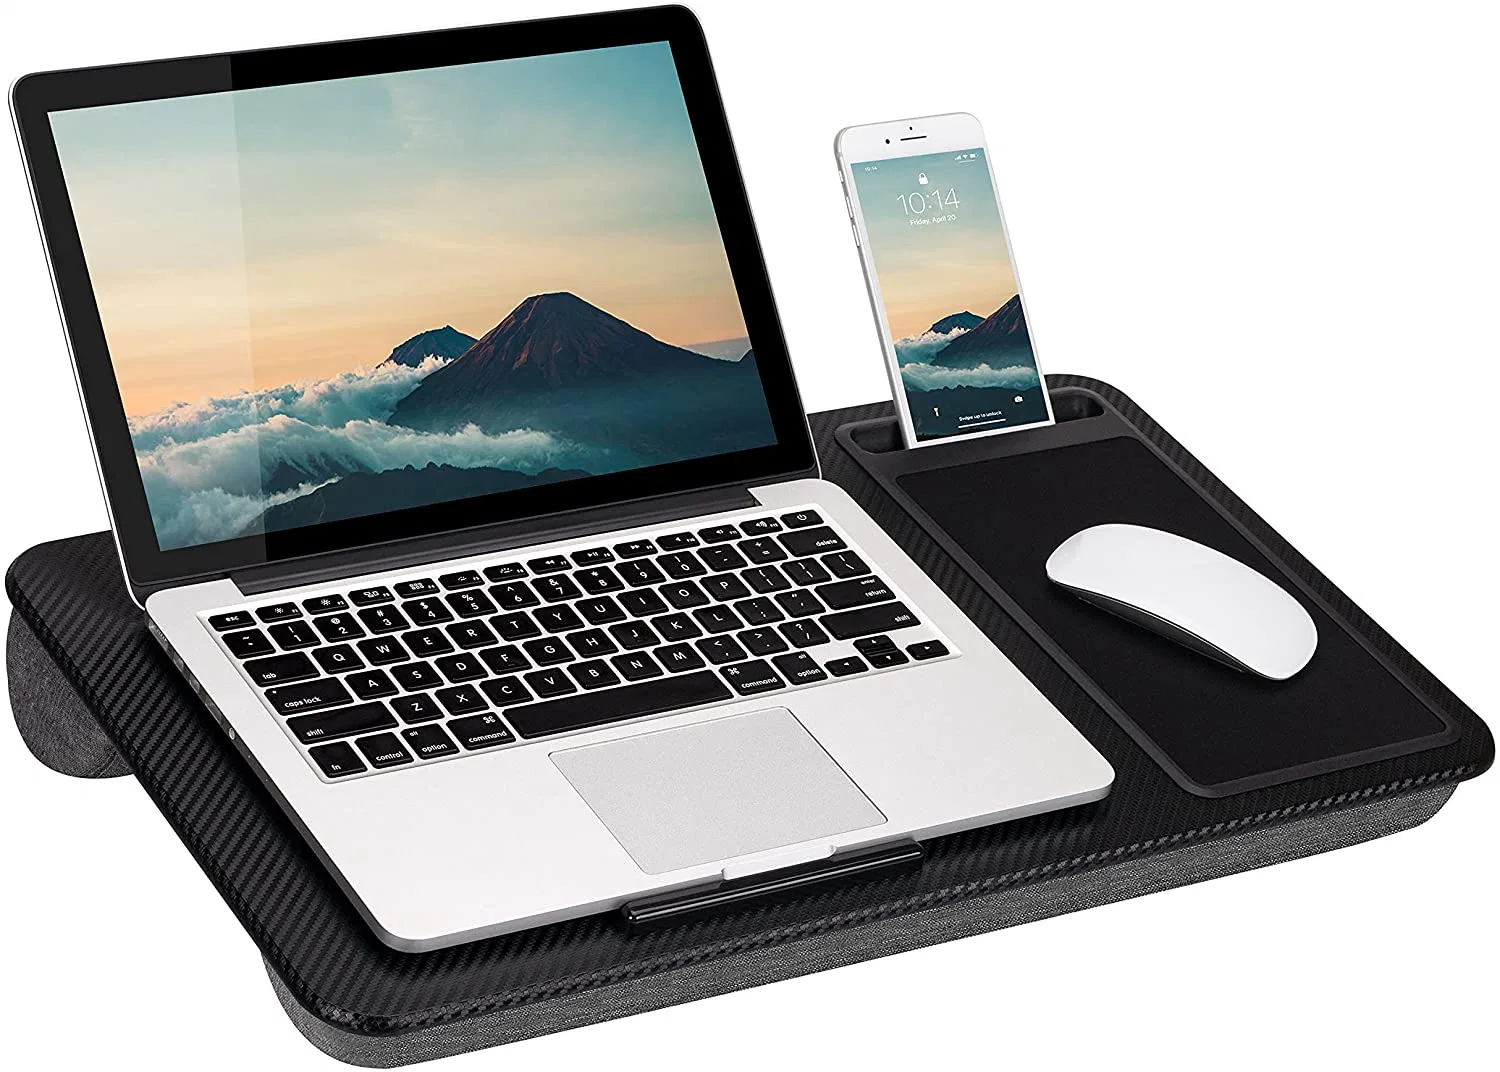 Домашний офис Lap Desk с выступом для устройства, мышью и держателем телефона - черный углерод - подходит для ноутбуков с диагональю до 15.6 дюймов